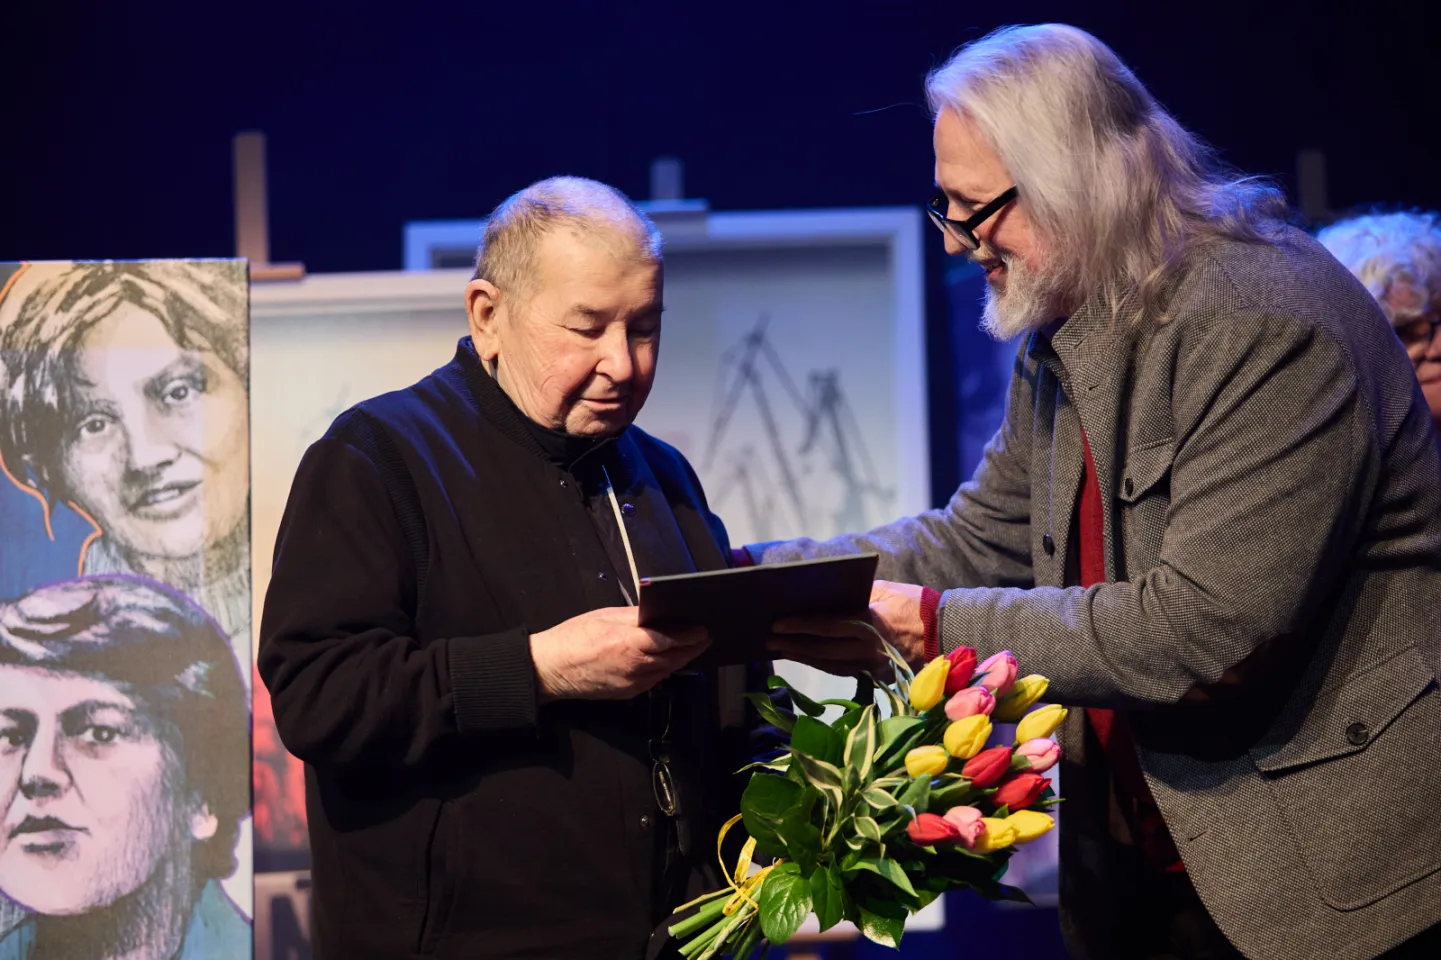 Gala wręczenia Nagród Teatralnych Marszałka Województwa Pomorskiego i Miasta Gdańsk